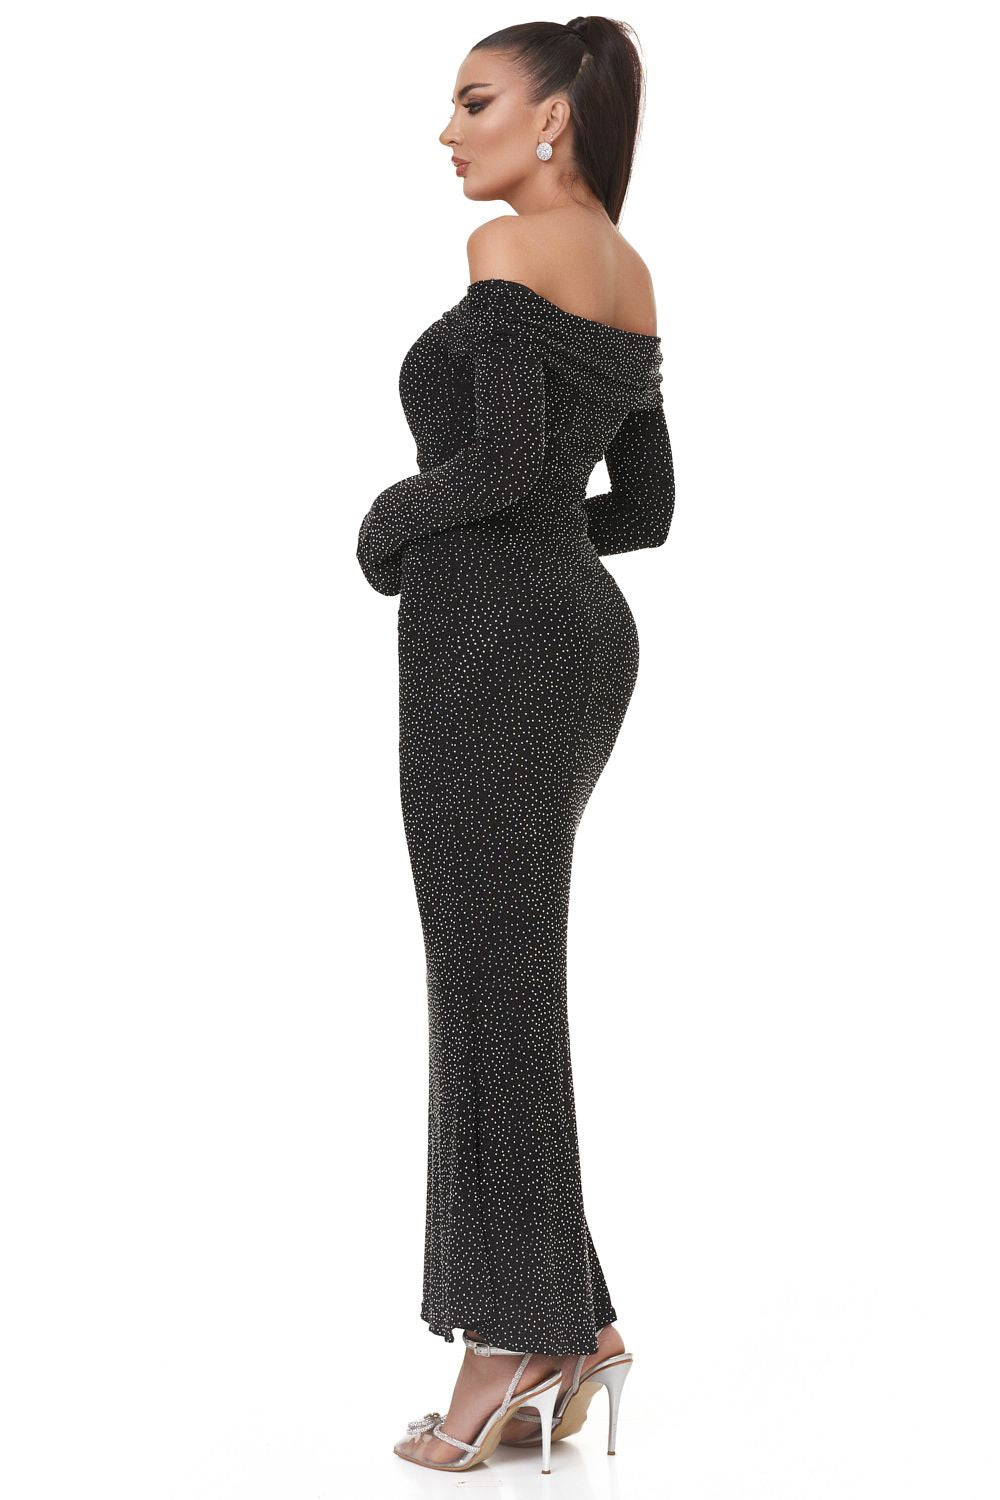 Serevi Bogas hosszú fekete női ruha